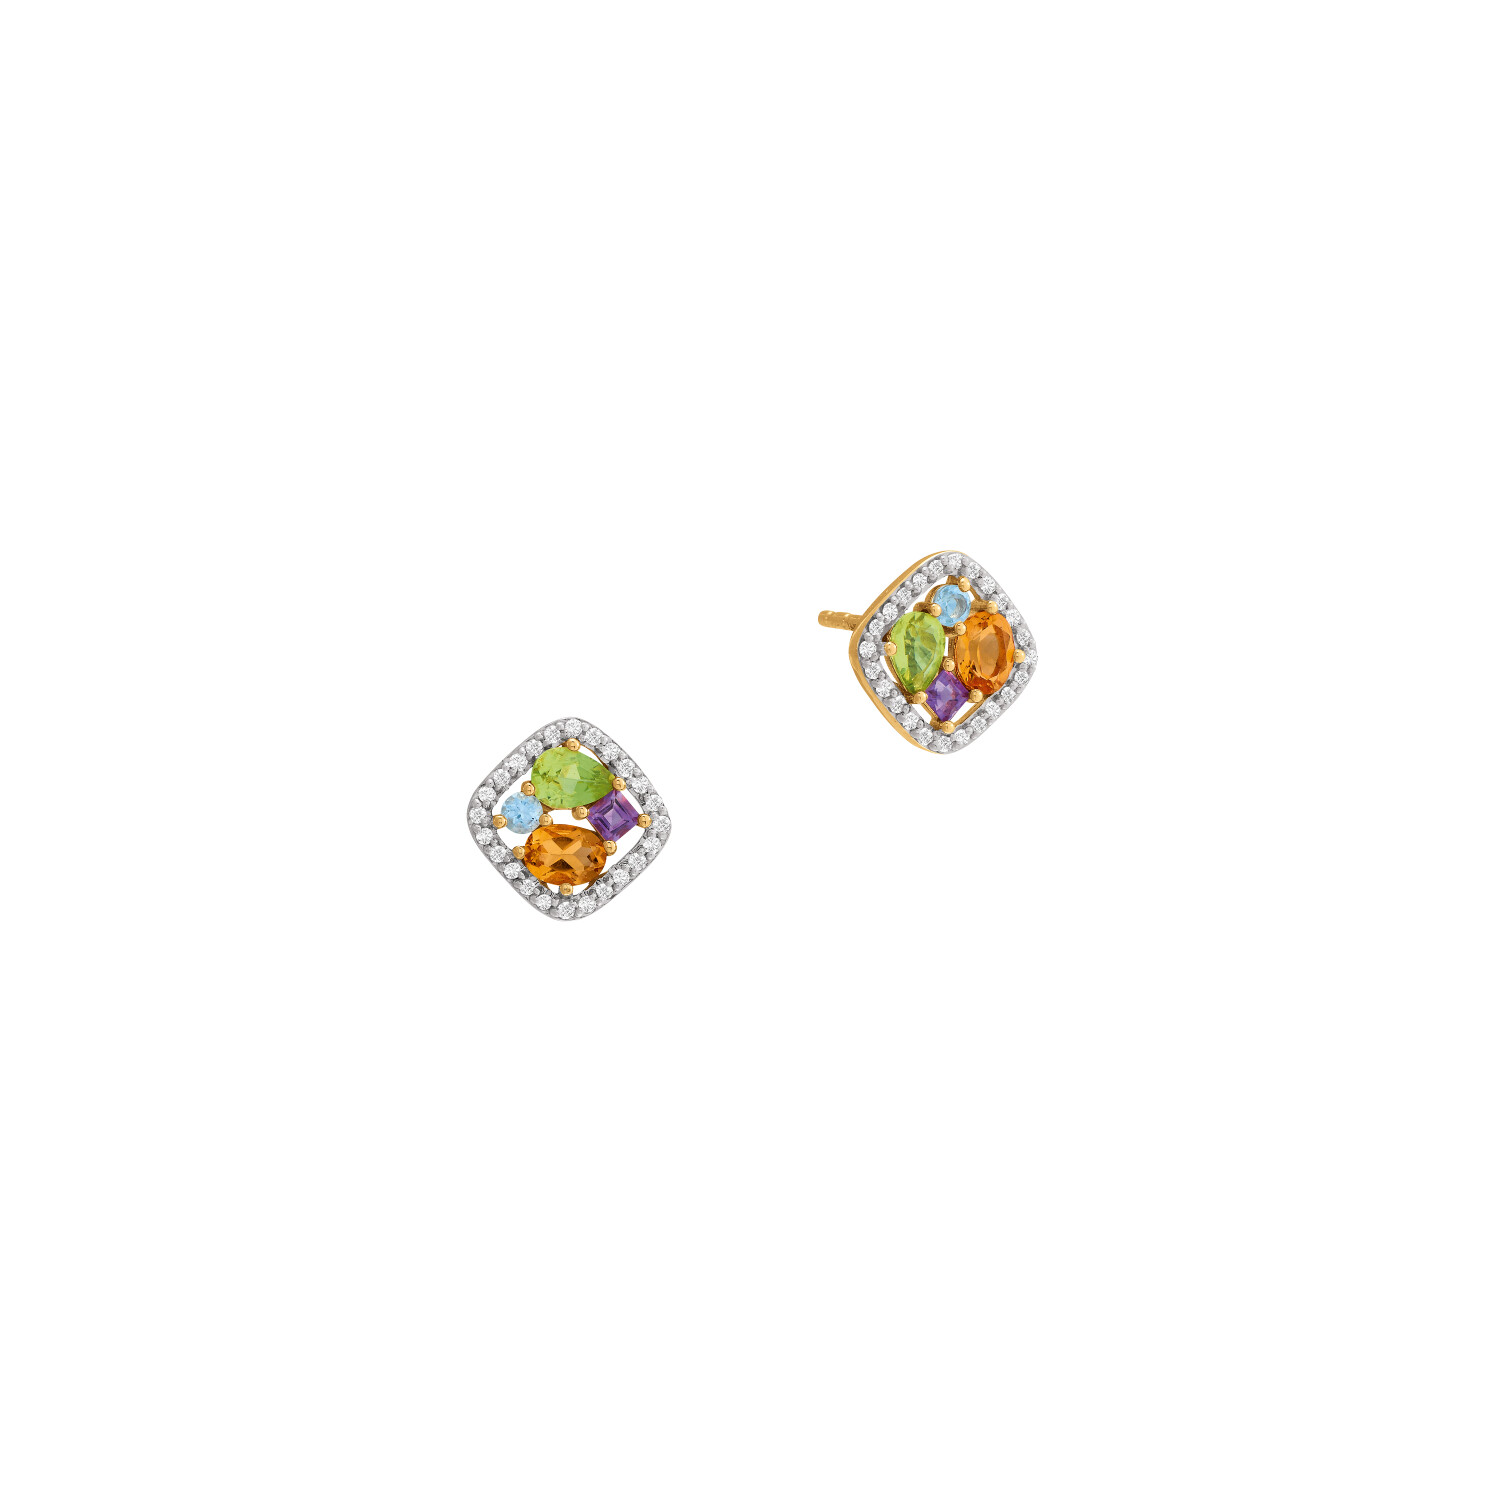 Boucles d'oreilles or jaune, diamants et pierres multicolores vue 1